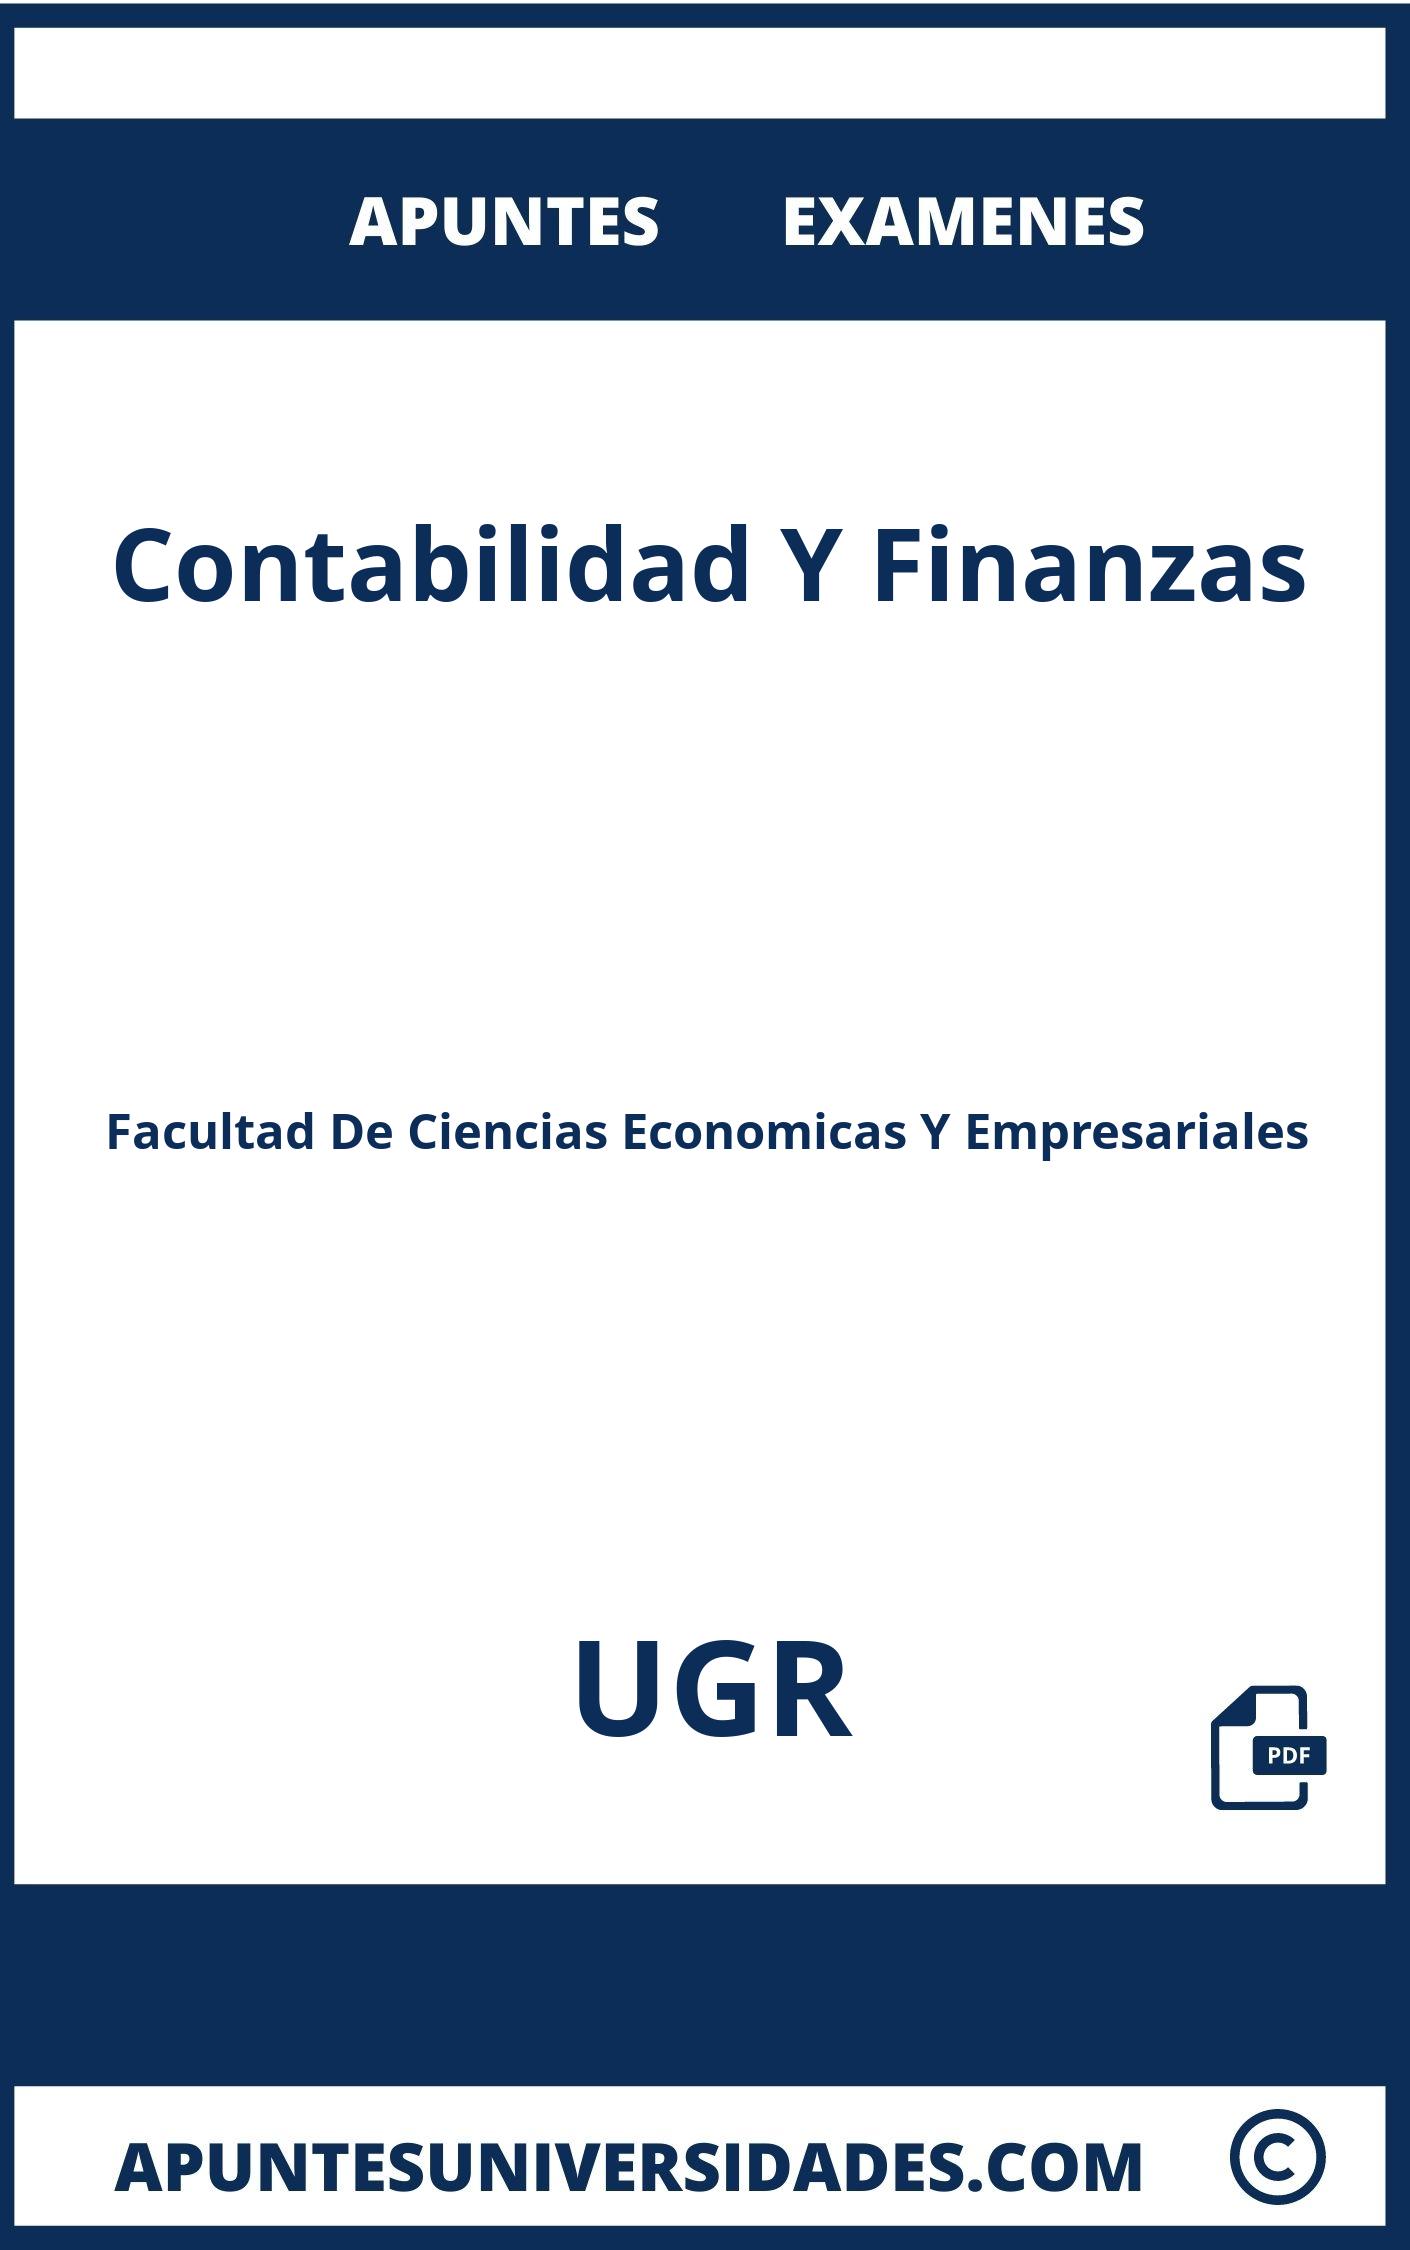 Examenes y Apuntes de Contabilidad Y Finanzas UGR